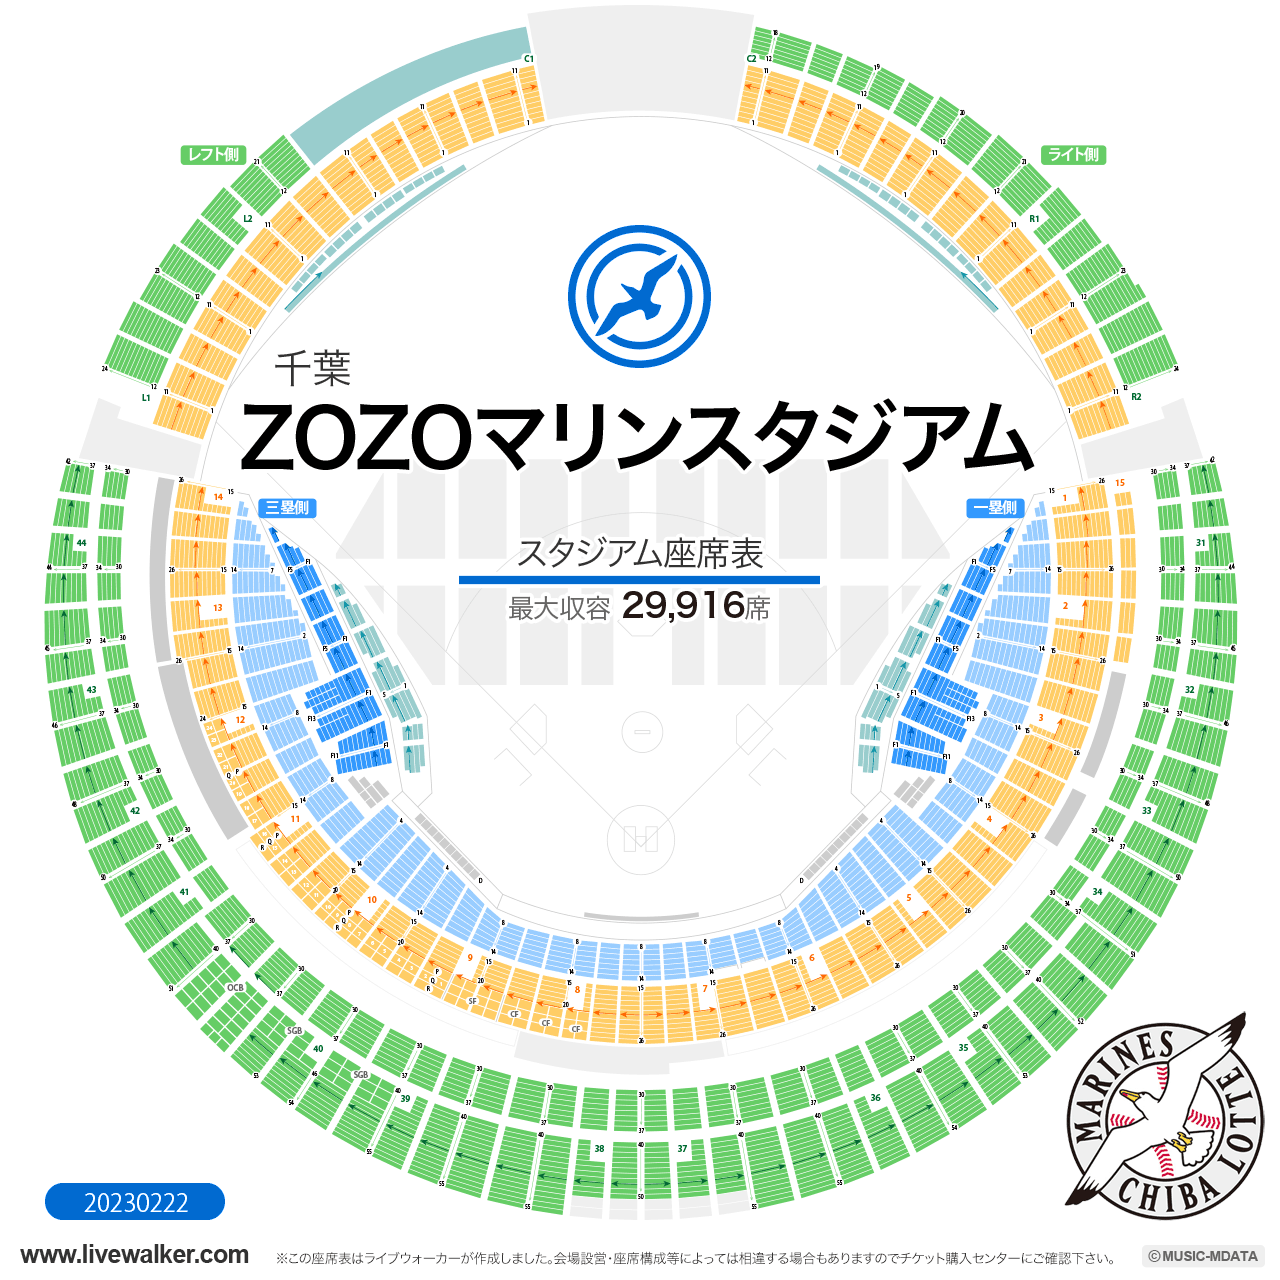 ZOZOマリンスタジアムスタジアムの座席表